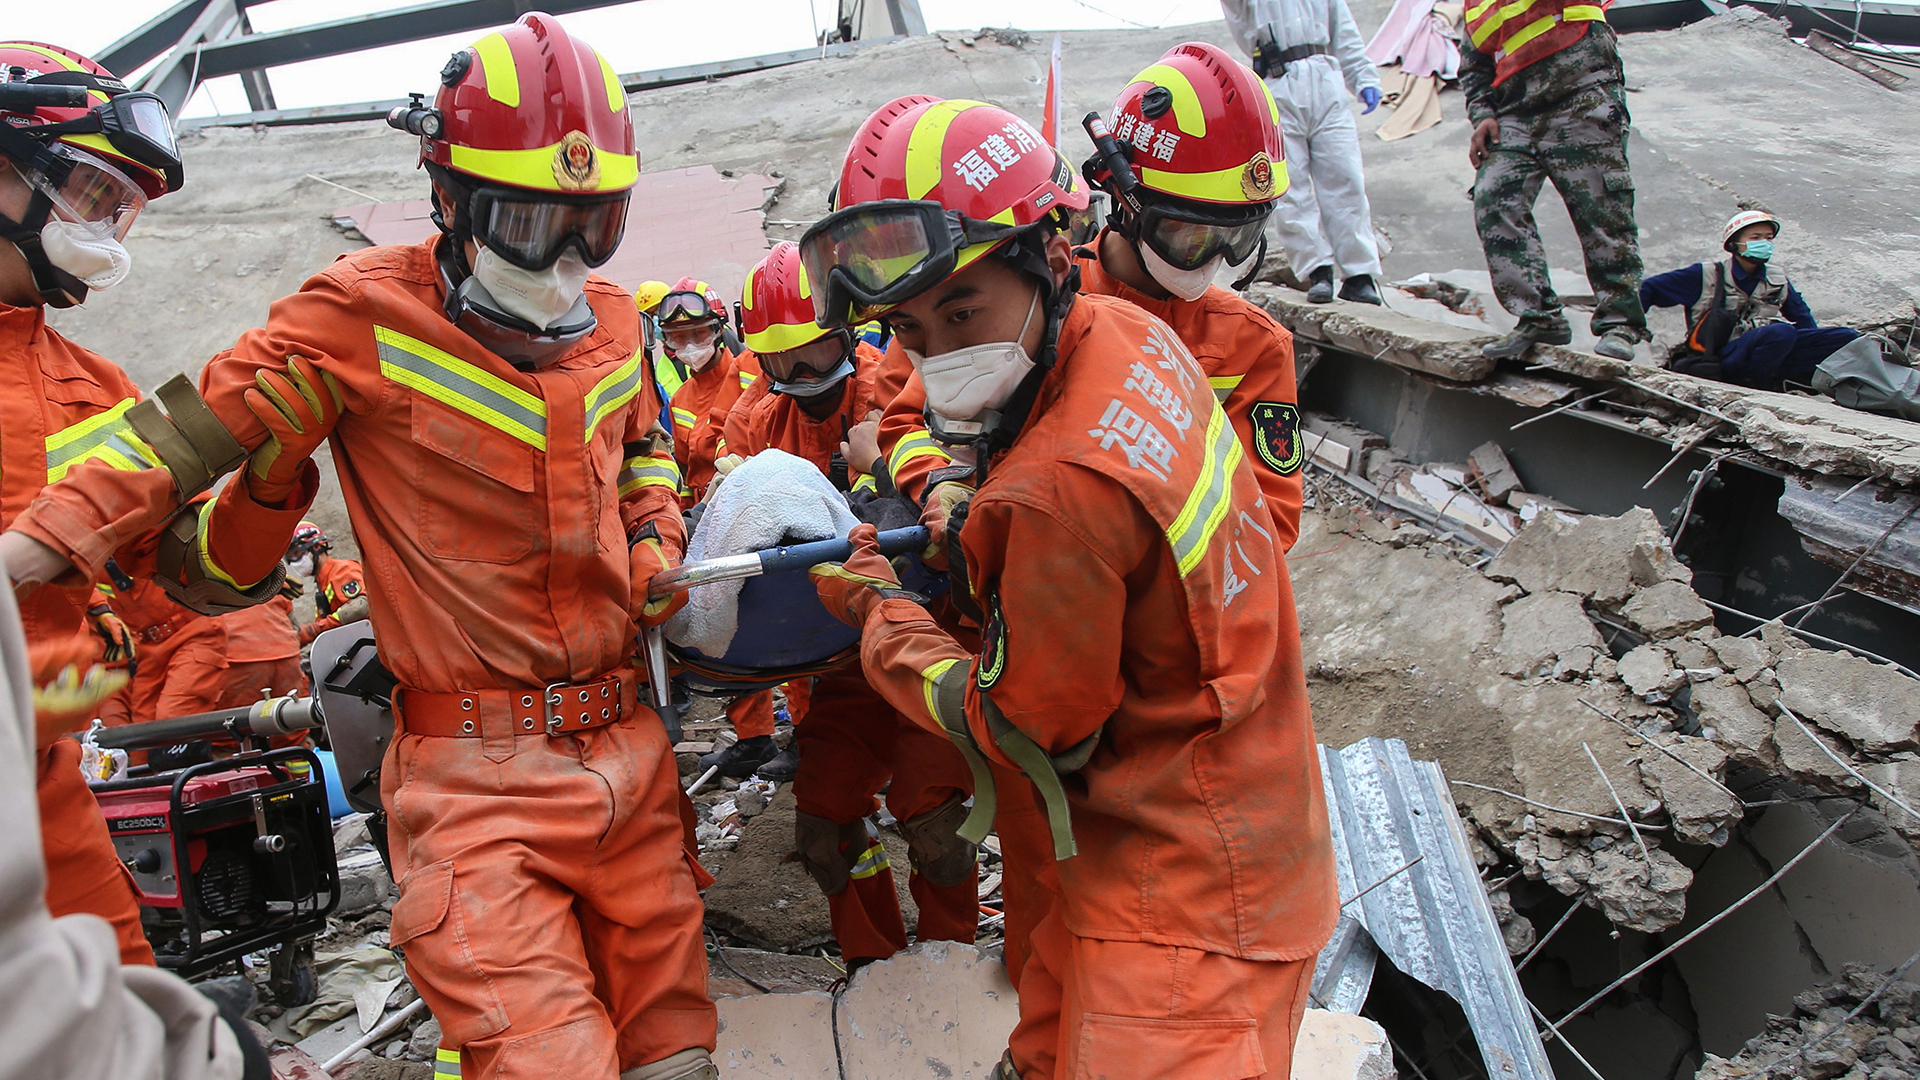 Rettungskräfte bergen einen Verletzten | AFP